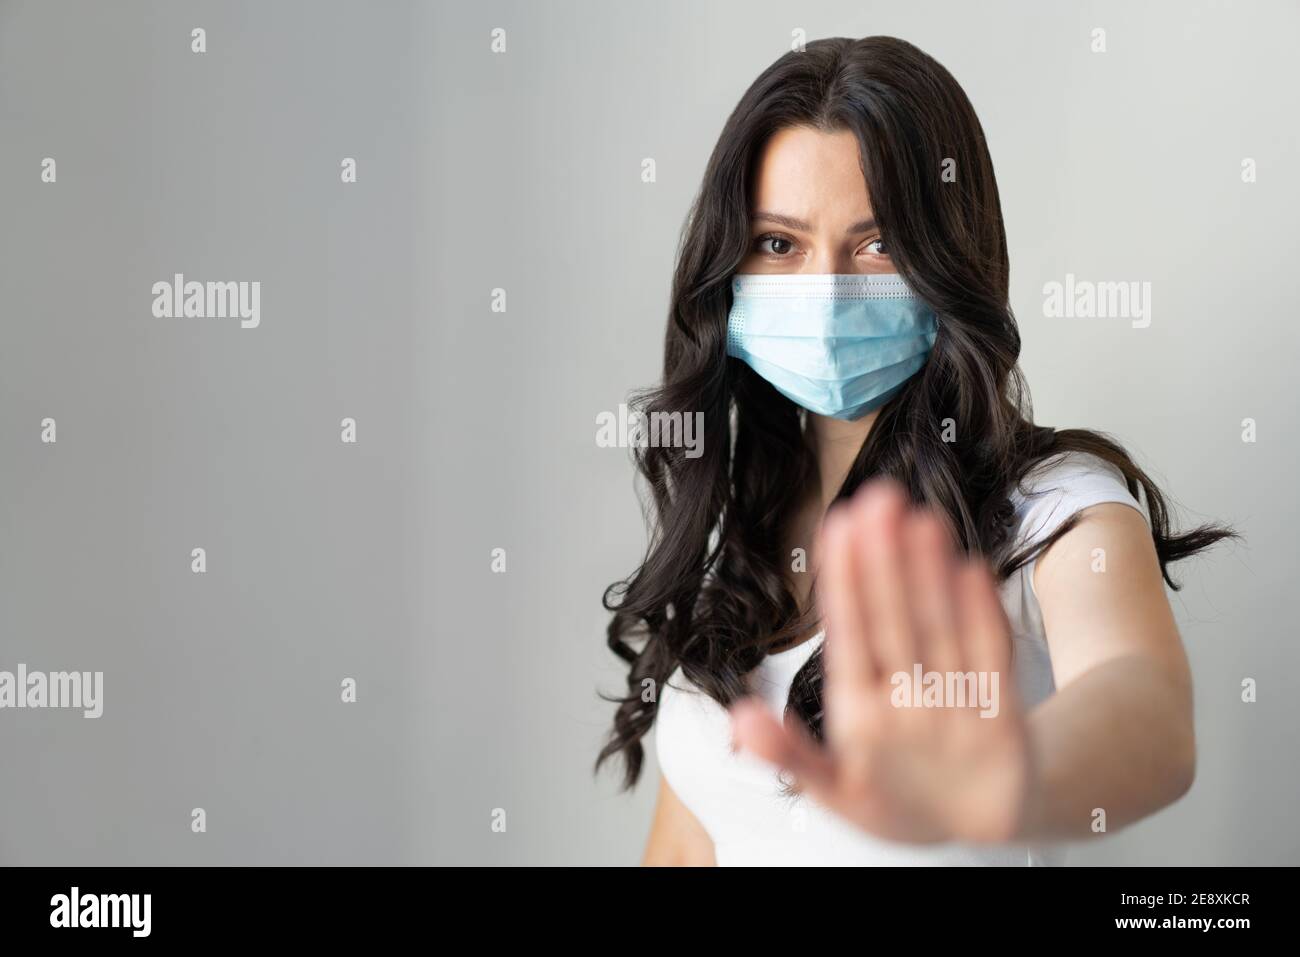 Femme portant un masque pour la protection contre la maladie et montre mains stop geste pour arrêter l'épidémie de virus corona. Un attrait pour rester à la maison. Concept de coronavirus. Banque D'Images